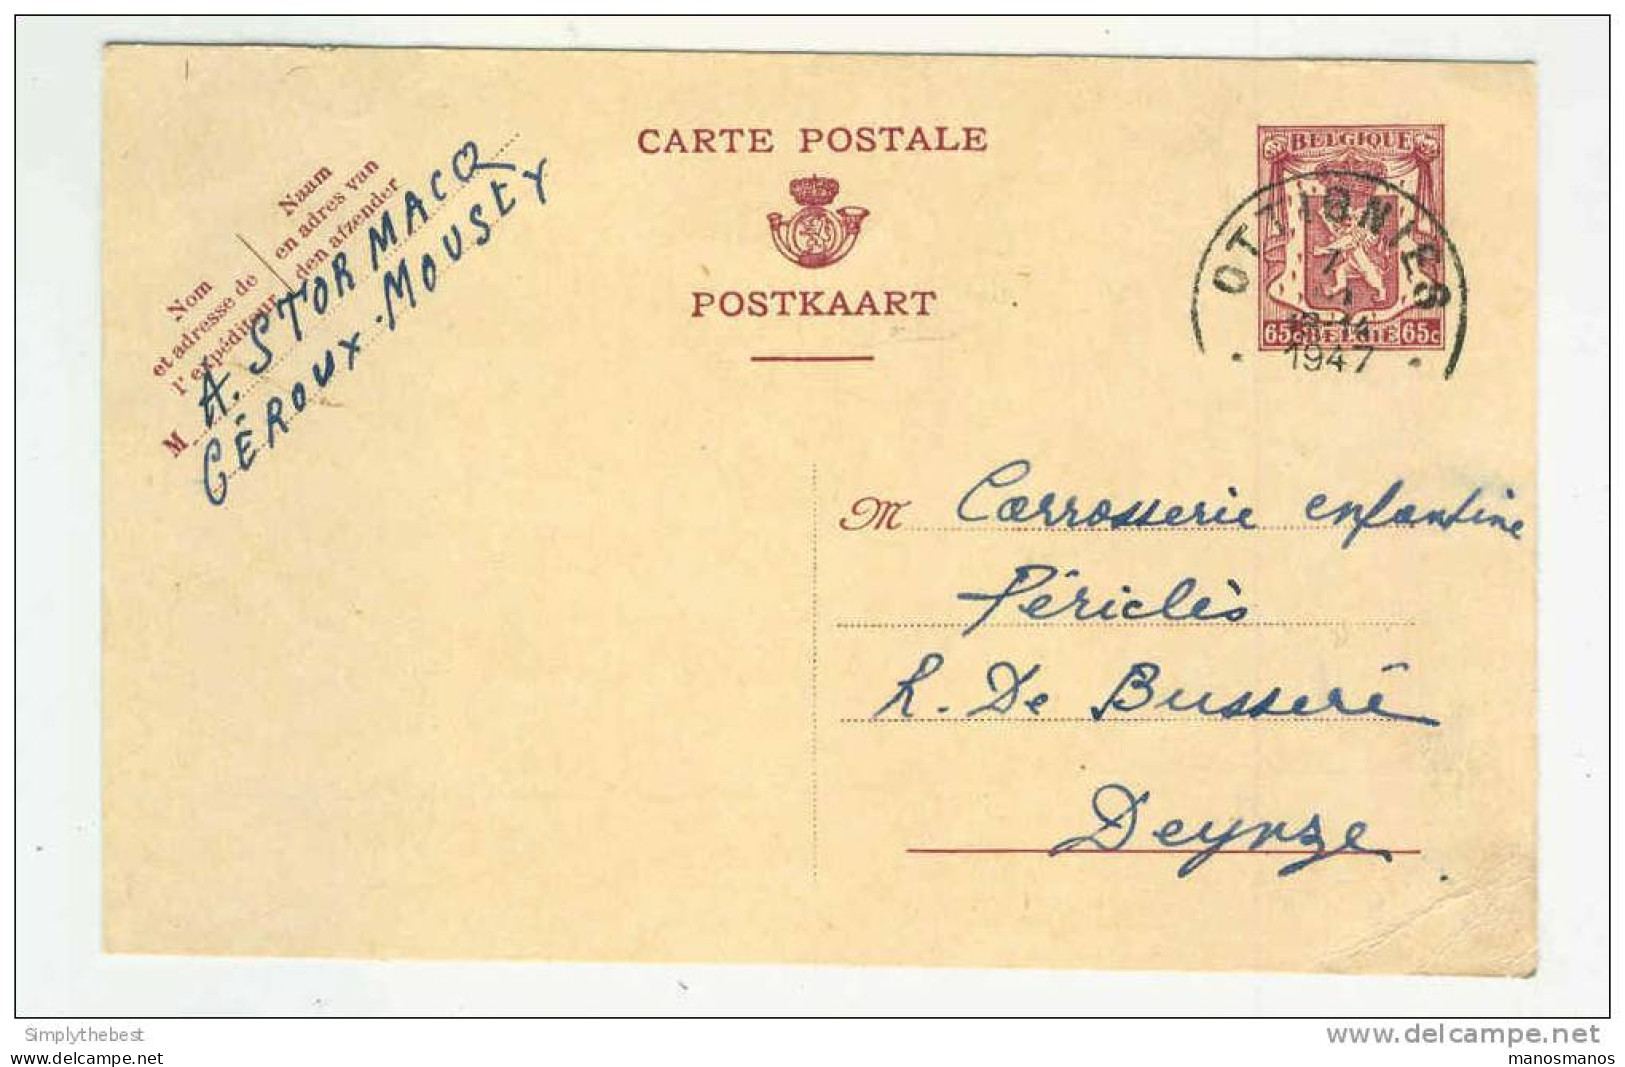 2 X Entier Postal 65 C 1947 Et 90 C 1952 OTTIGNIES - 1 Cachet Privé Meubles Stormacq à CEROUX-MOUSTY  --  GG643 - Postkarten 1934-1951